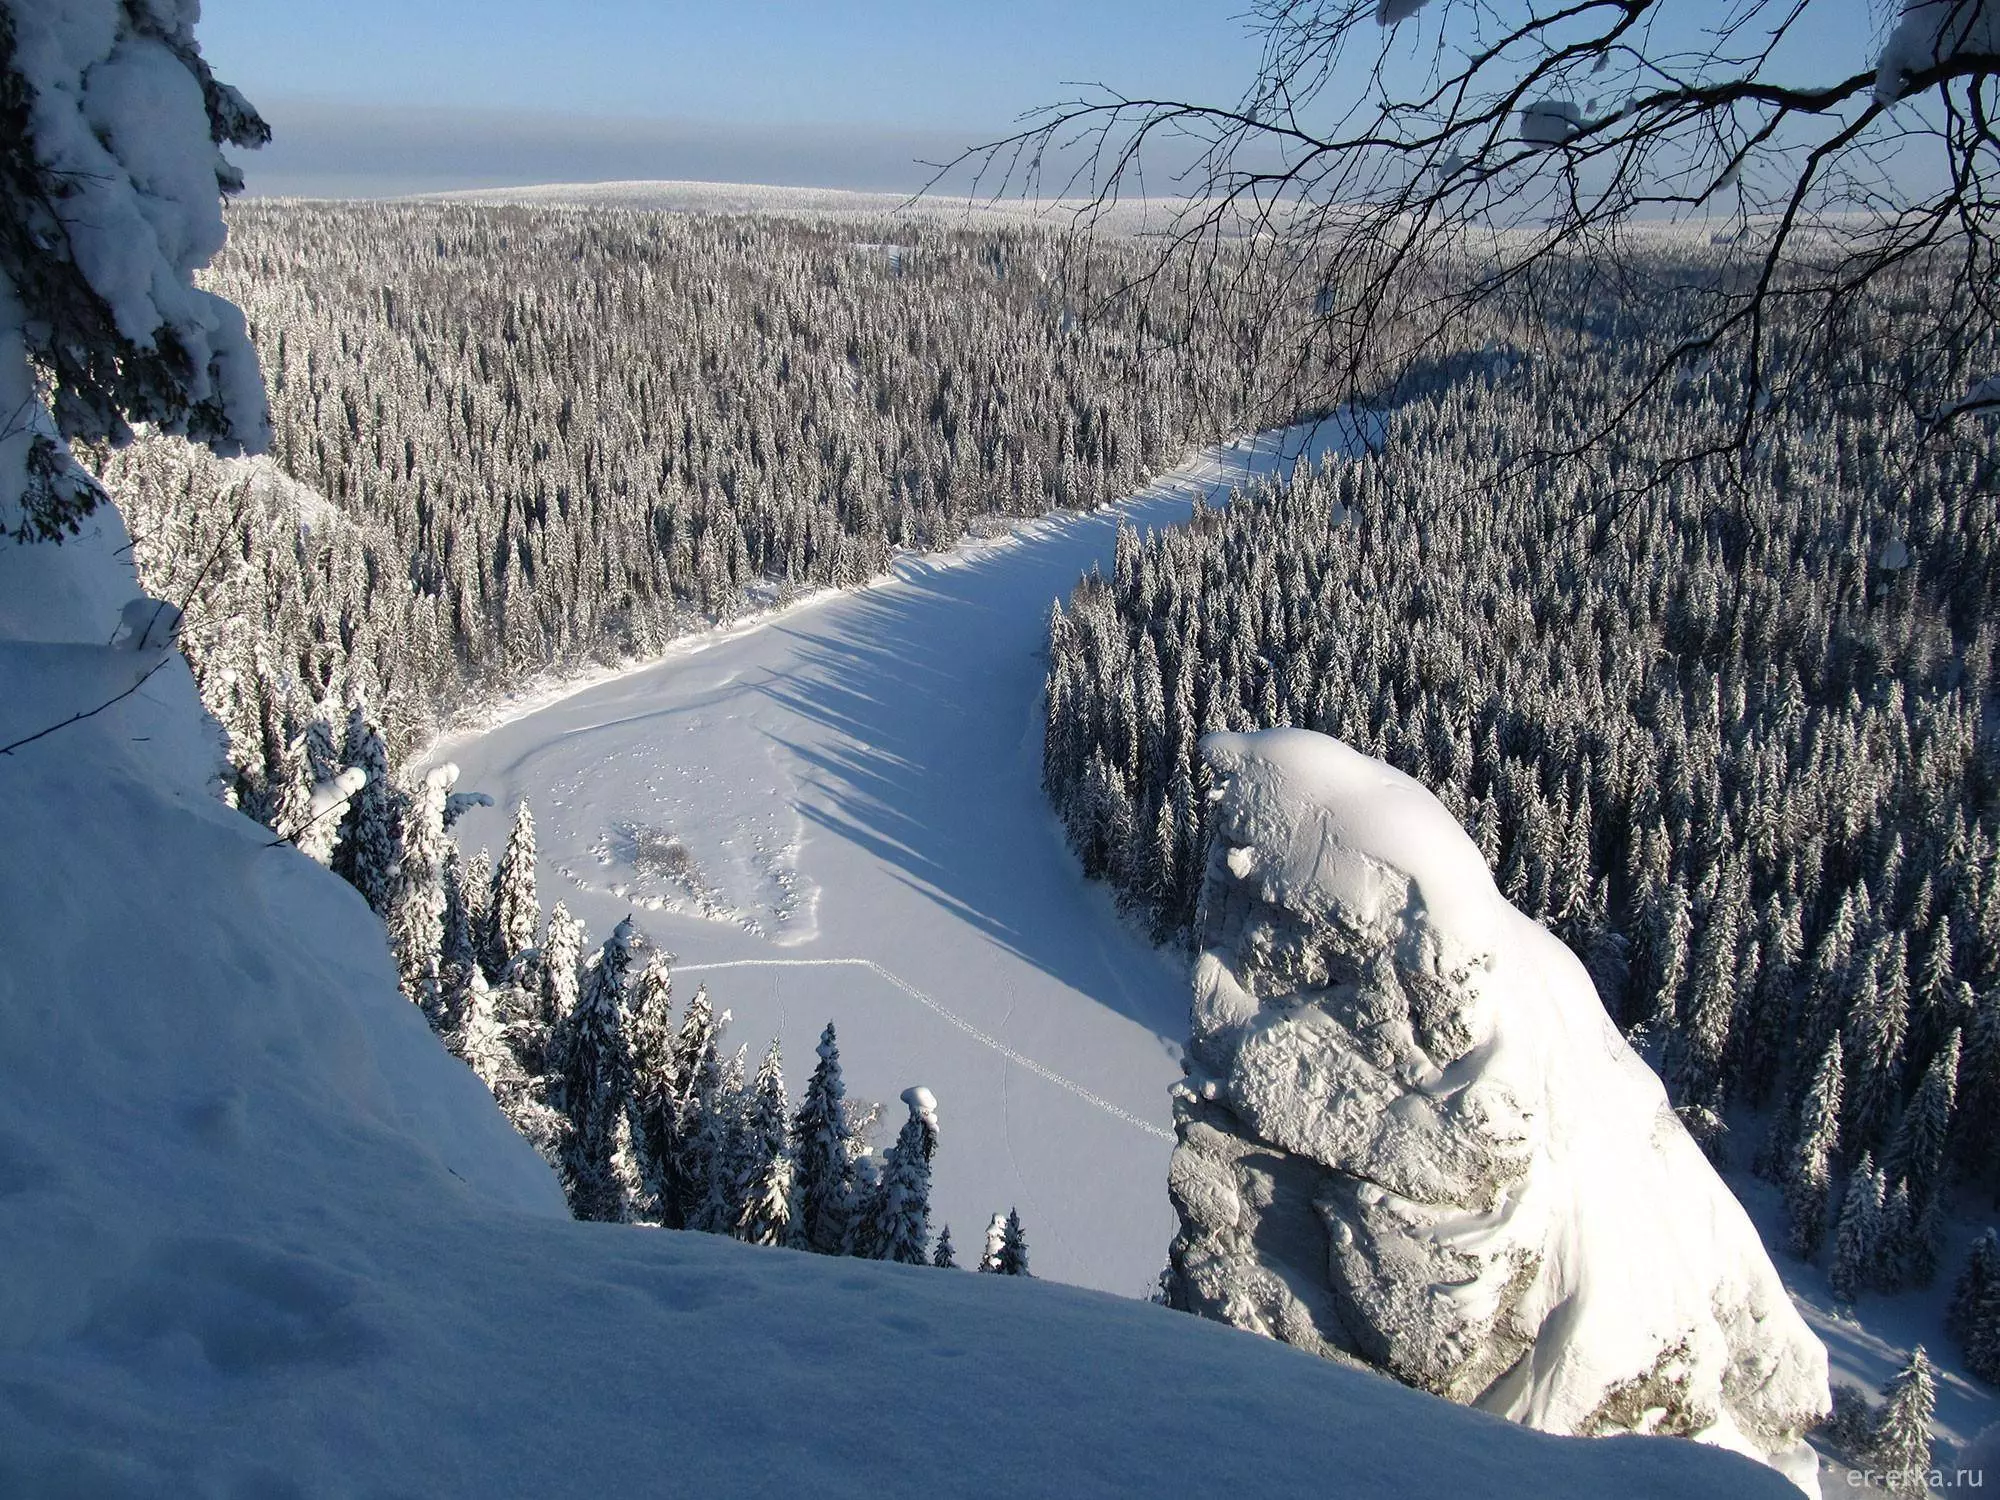 Достопримечательности алтая – топ 10 – самые интересные и красивые места для путешествия зимой, что увидеть и куда поехать на алтае · youtravel.me